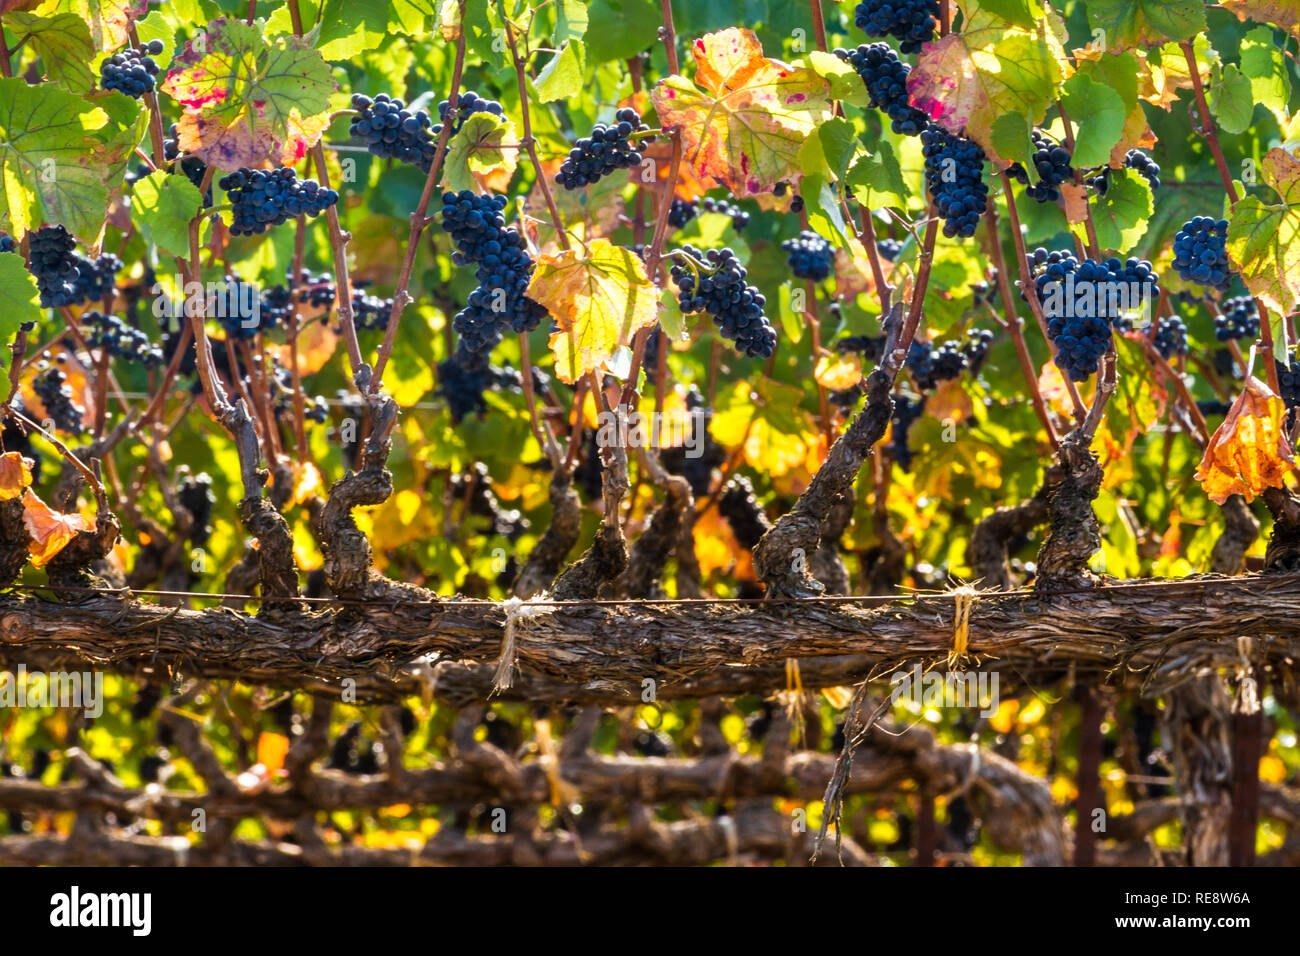 Vieille vigne rouge - Vieilles vignes produisent des raisins rouges de classe mondiale. Russian River Valley, California, USA Banque D'Images